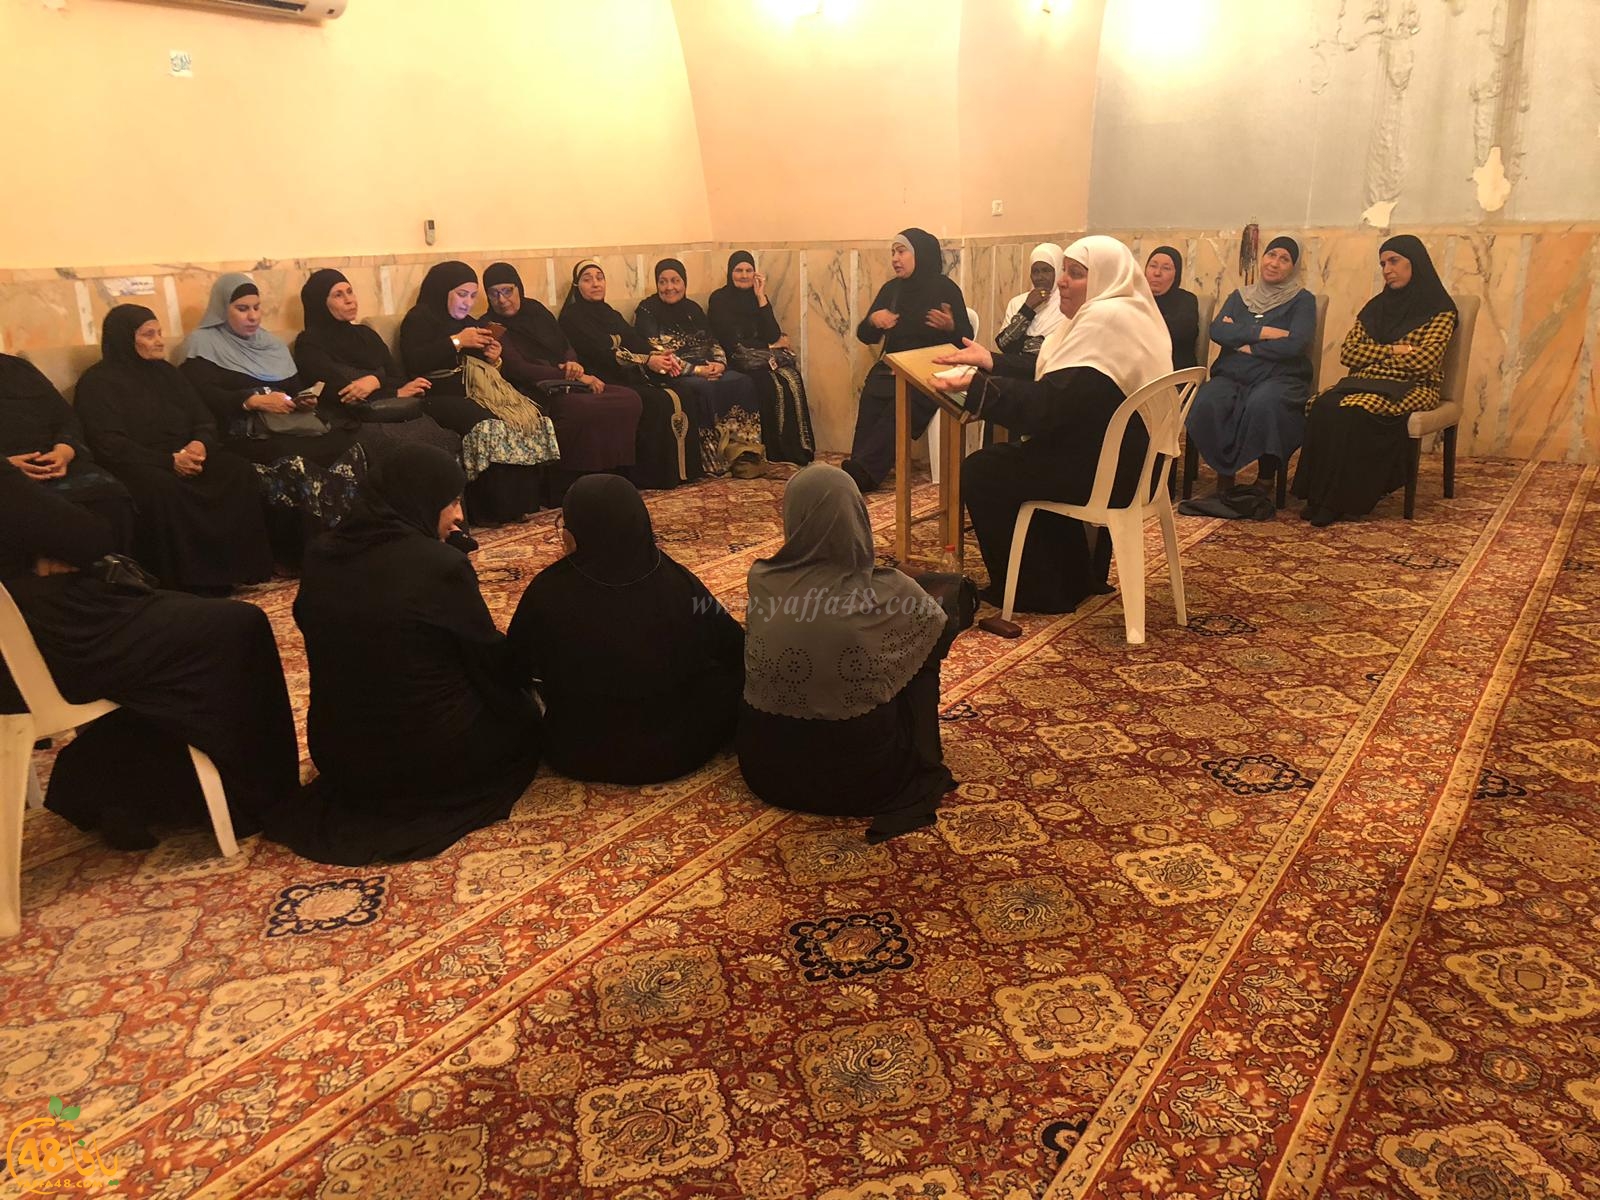  بالصور: لجنة تيسير الحج والعمرة بيافا تُنظم درساً لنساء يافا المقبلات على الحج 